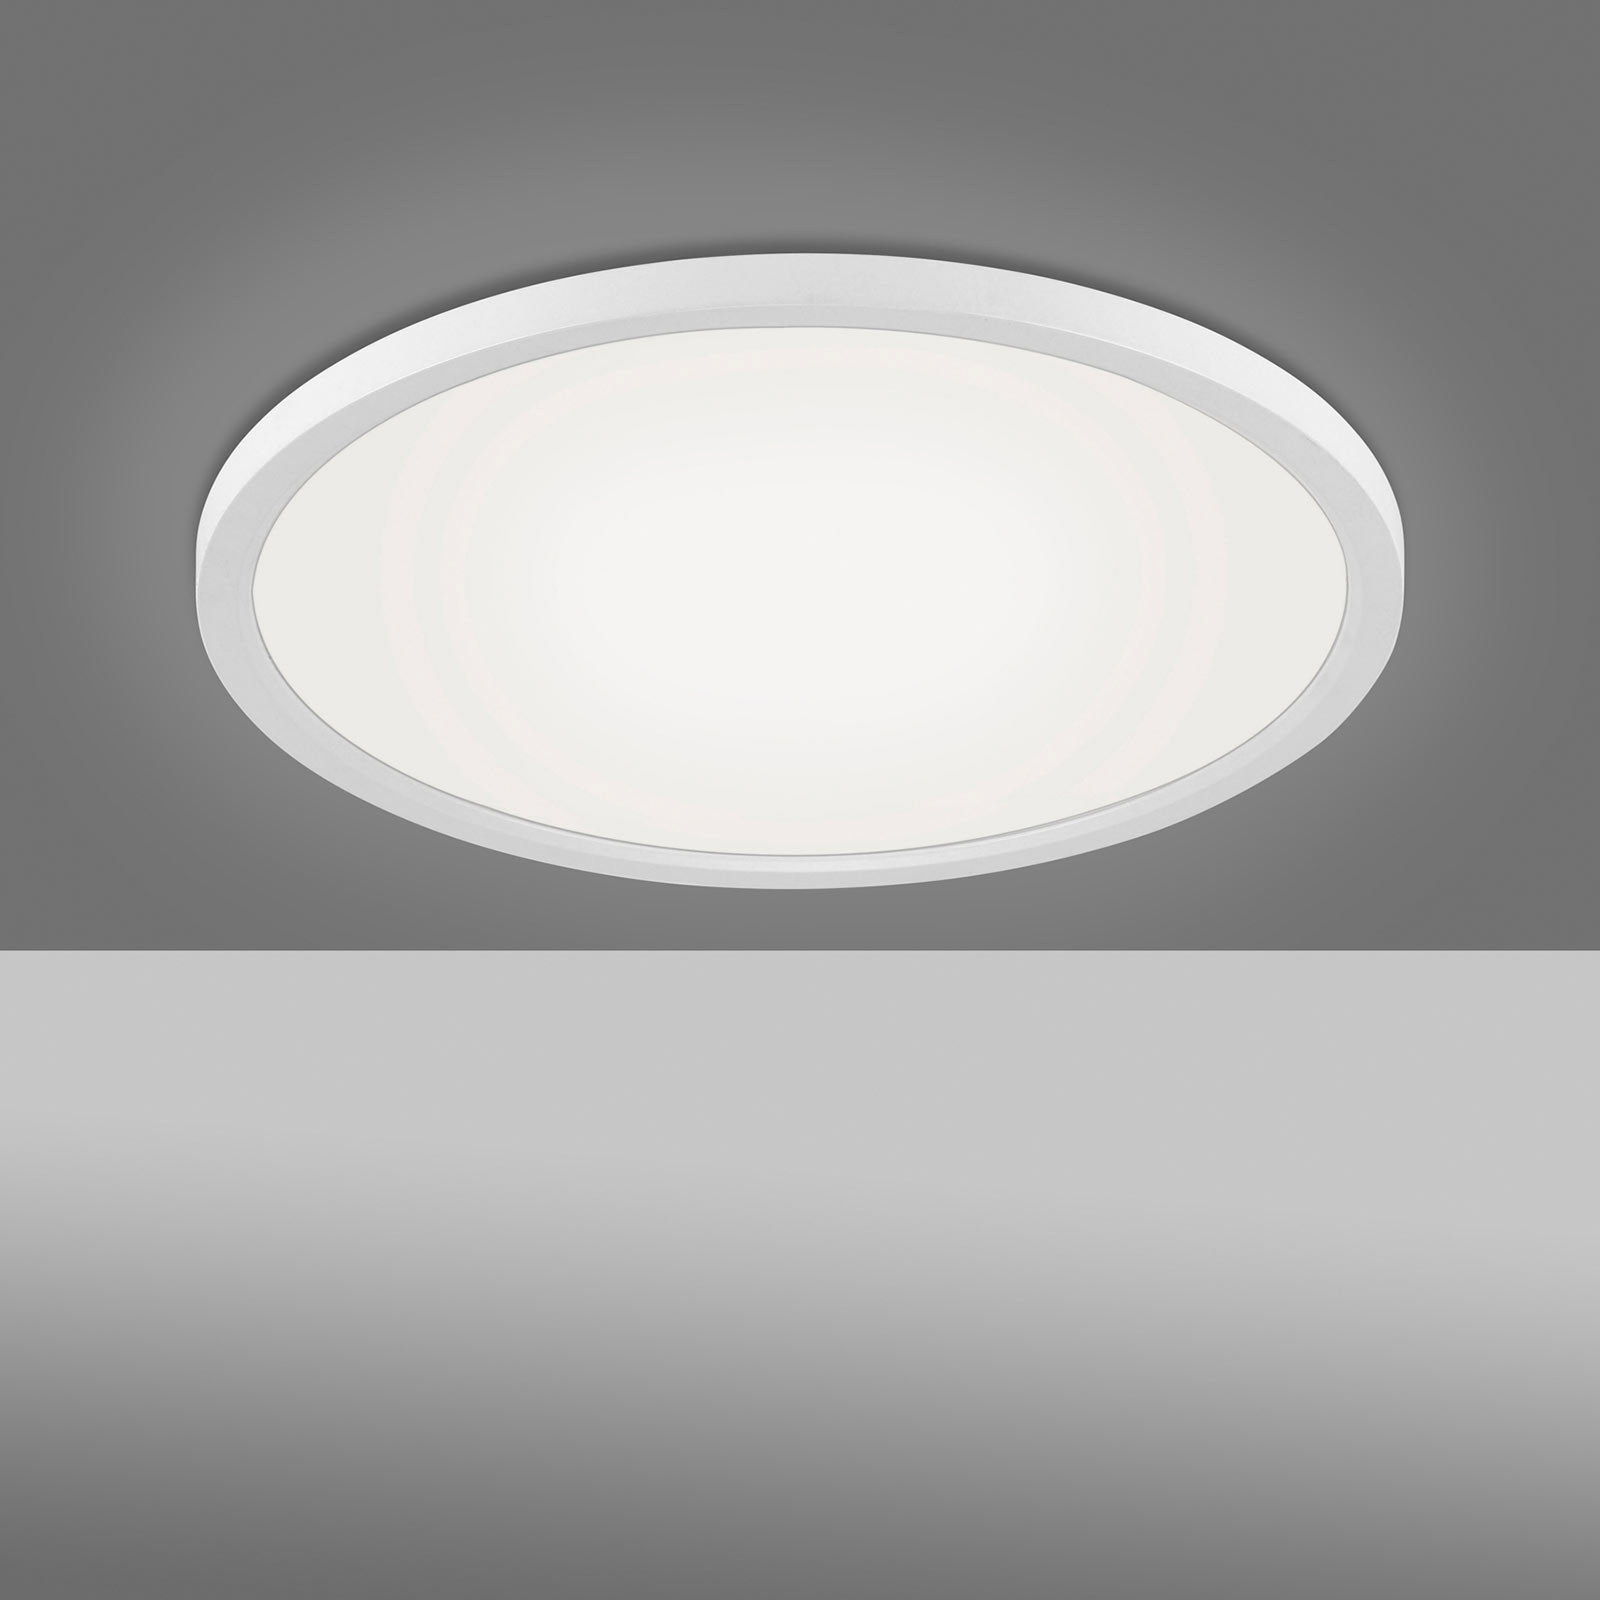 Lampa sufitowa LED Flat CCT, Ø 40 cm, biała